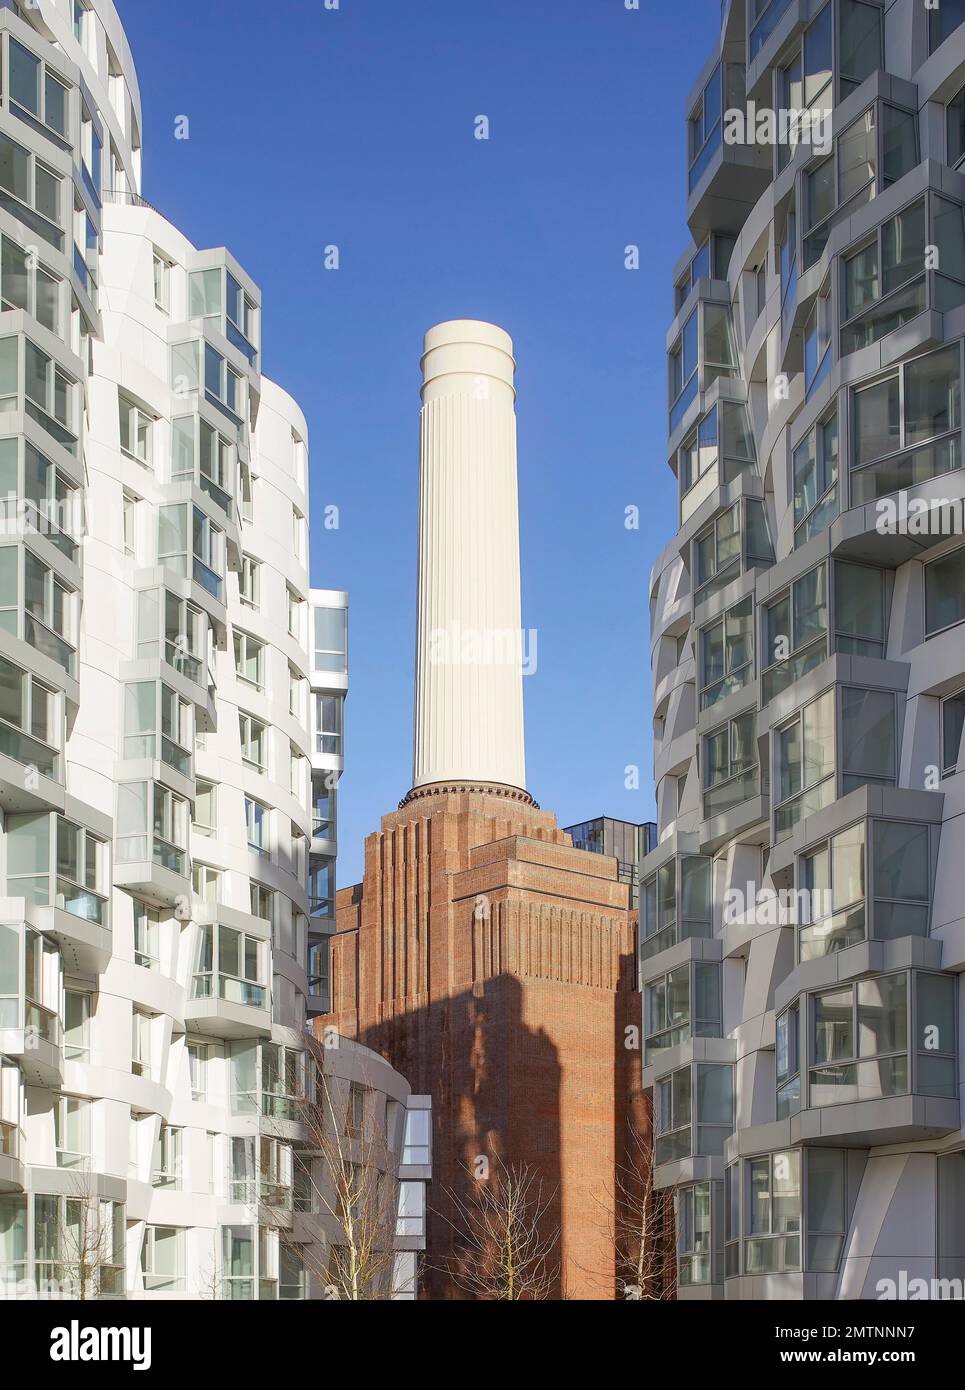 Il potenziale posto in giustapposizione all'iconico edificio della Centrale elettrica di Battersea. Prospect Place Battersea Power Station Frank Gehry, Londra, Regno Unito Foto Stock